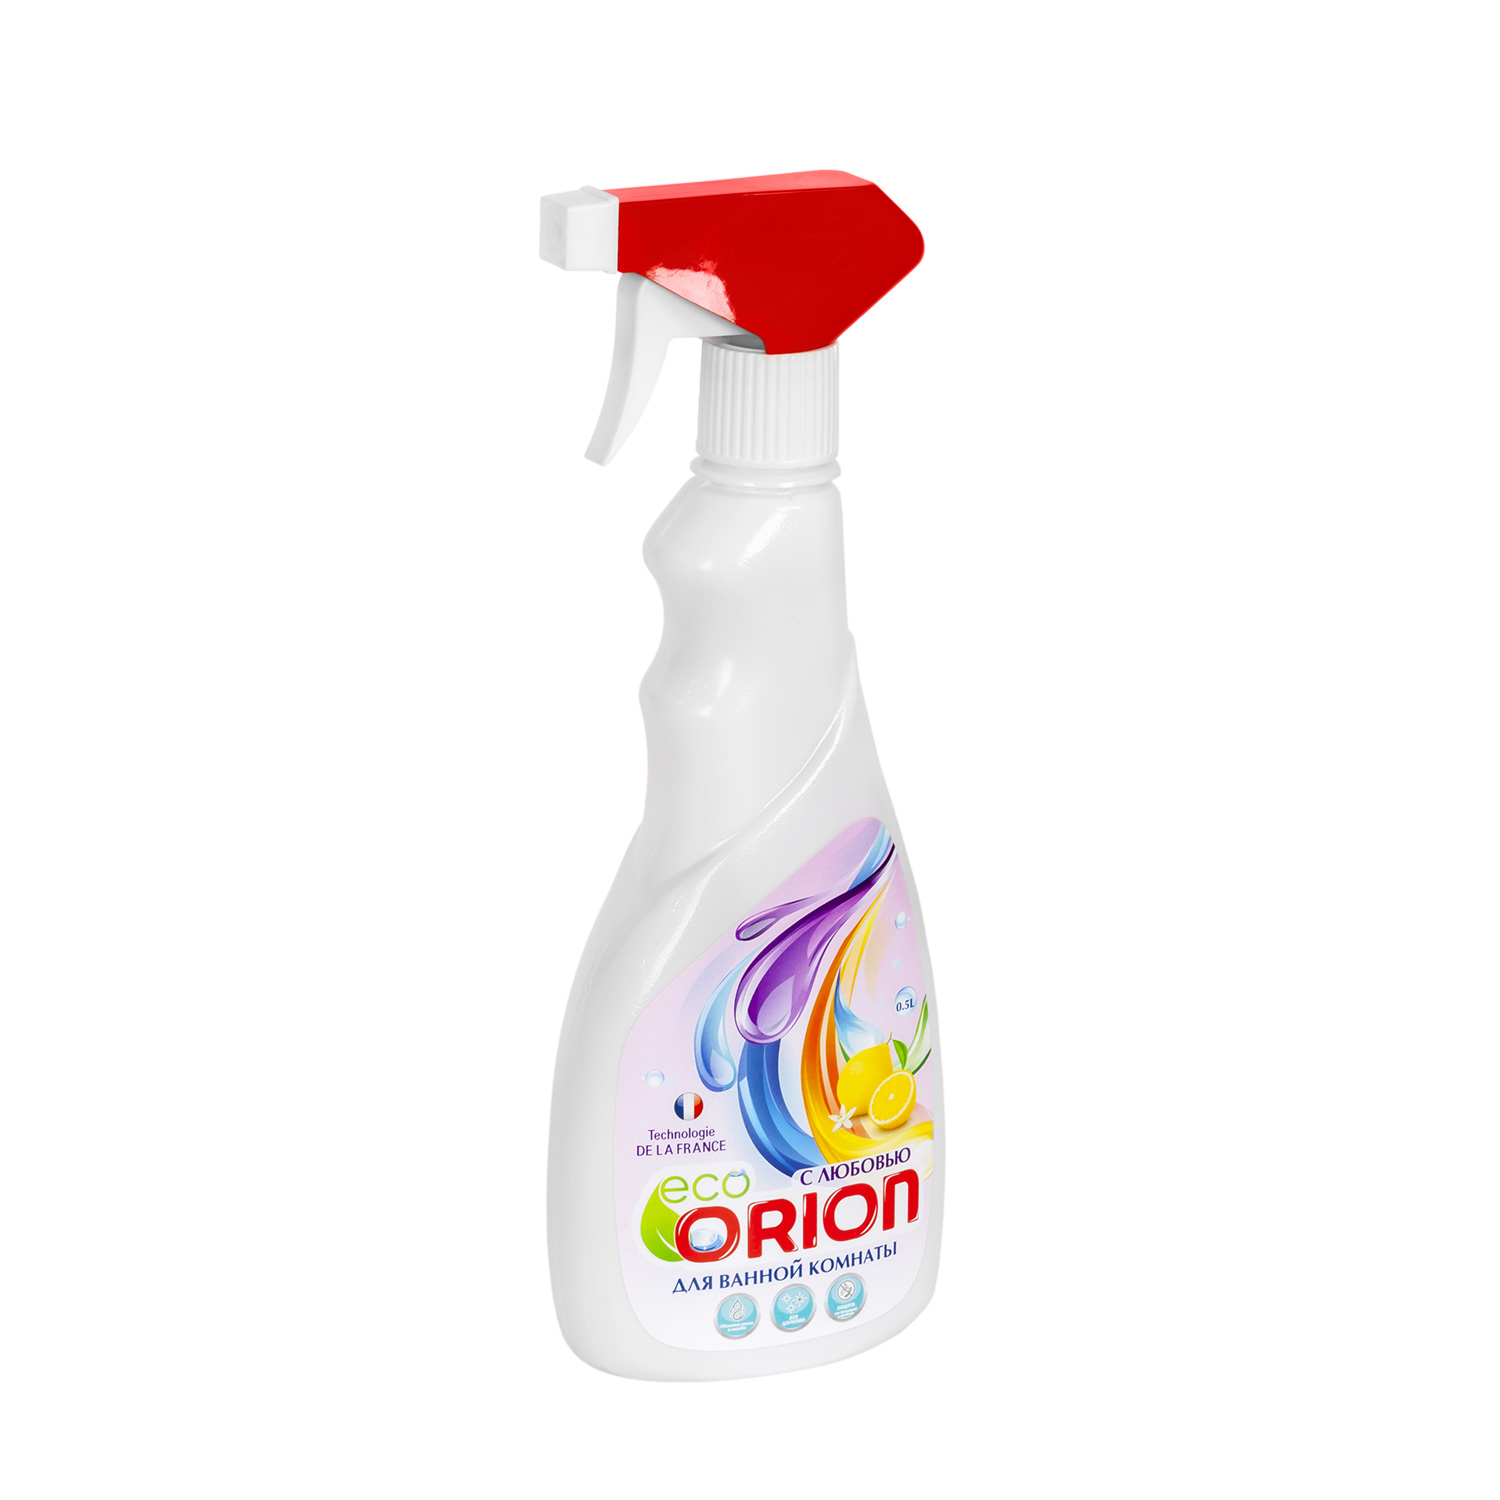 Картинка Средство для чистки ванной комнаты 500 мл Orion по разумной цене купить в интернет магазине mall.su